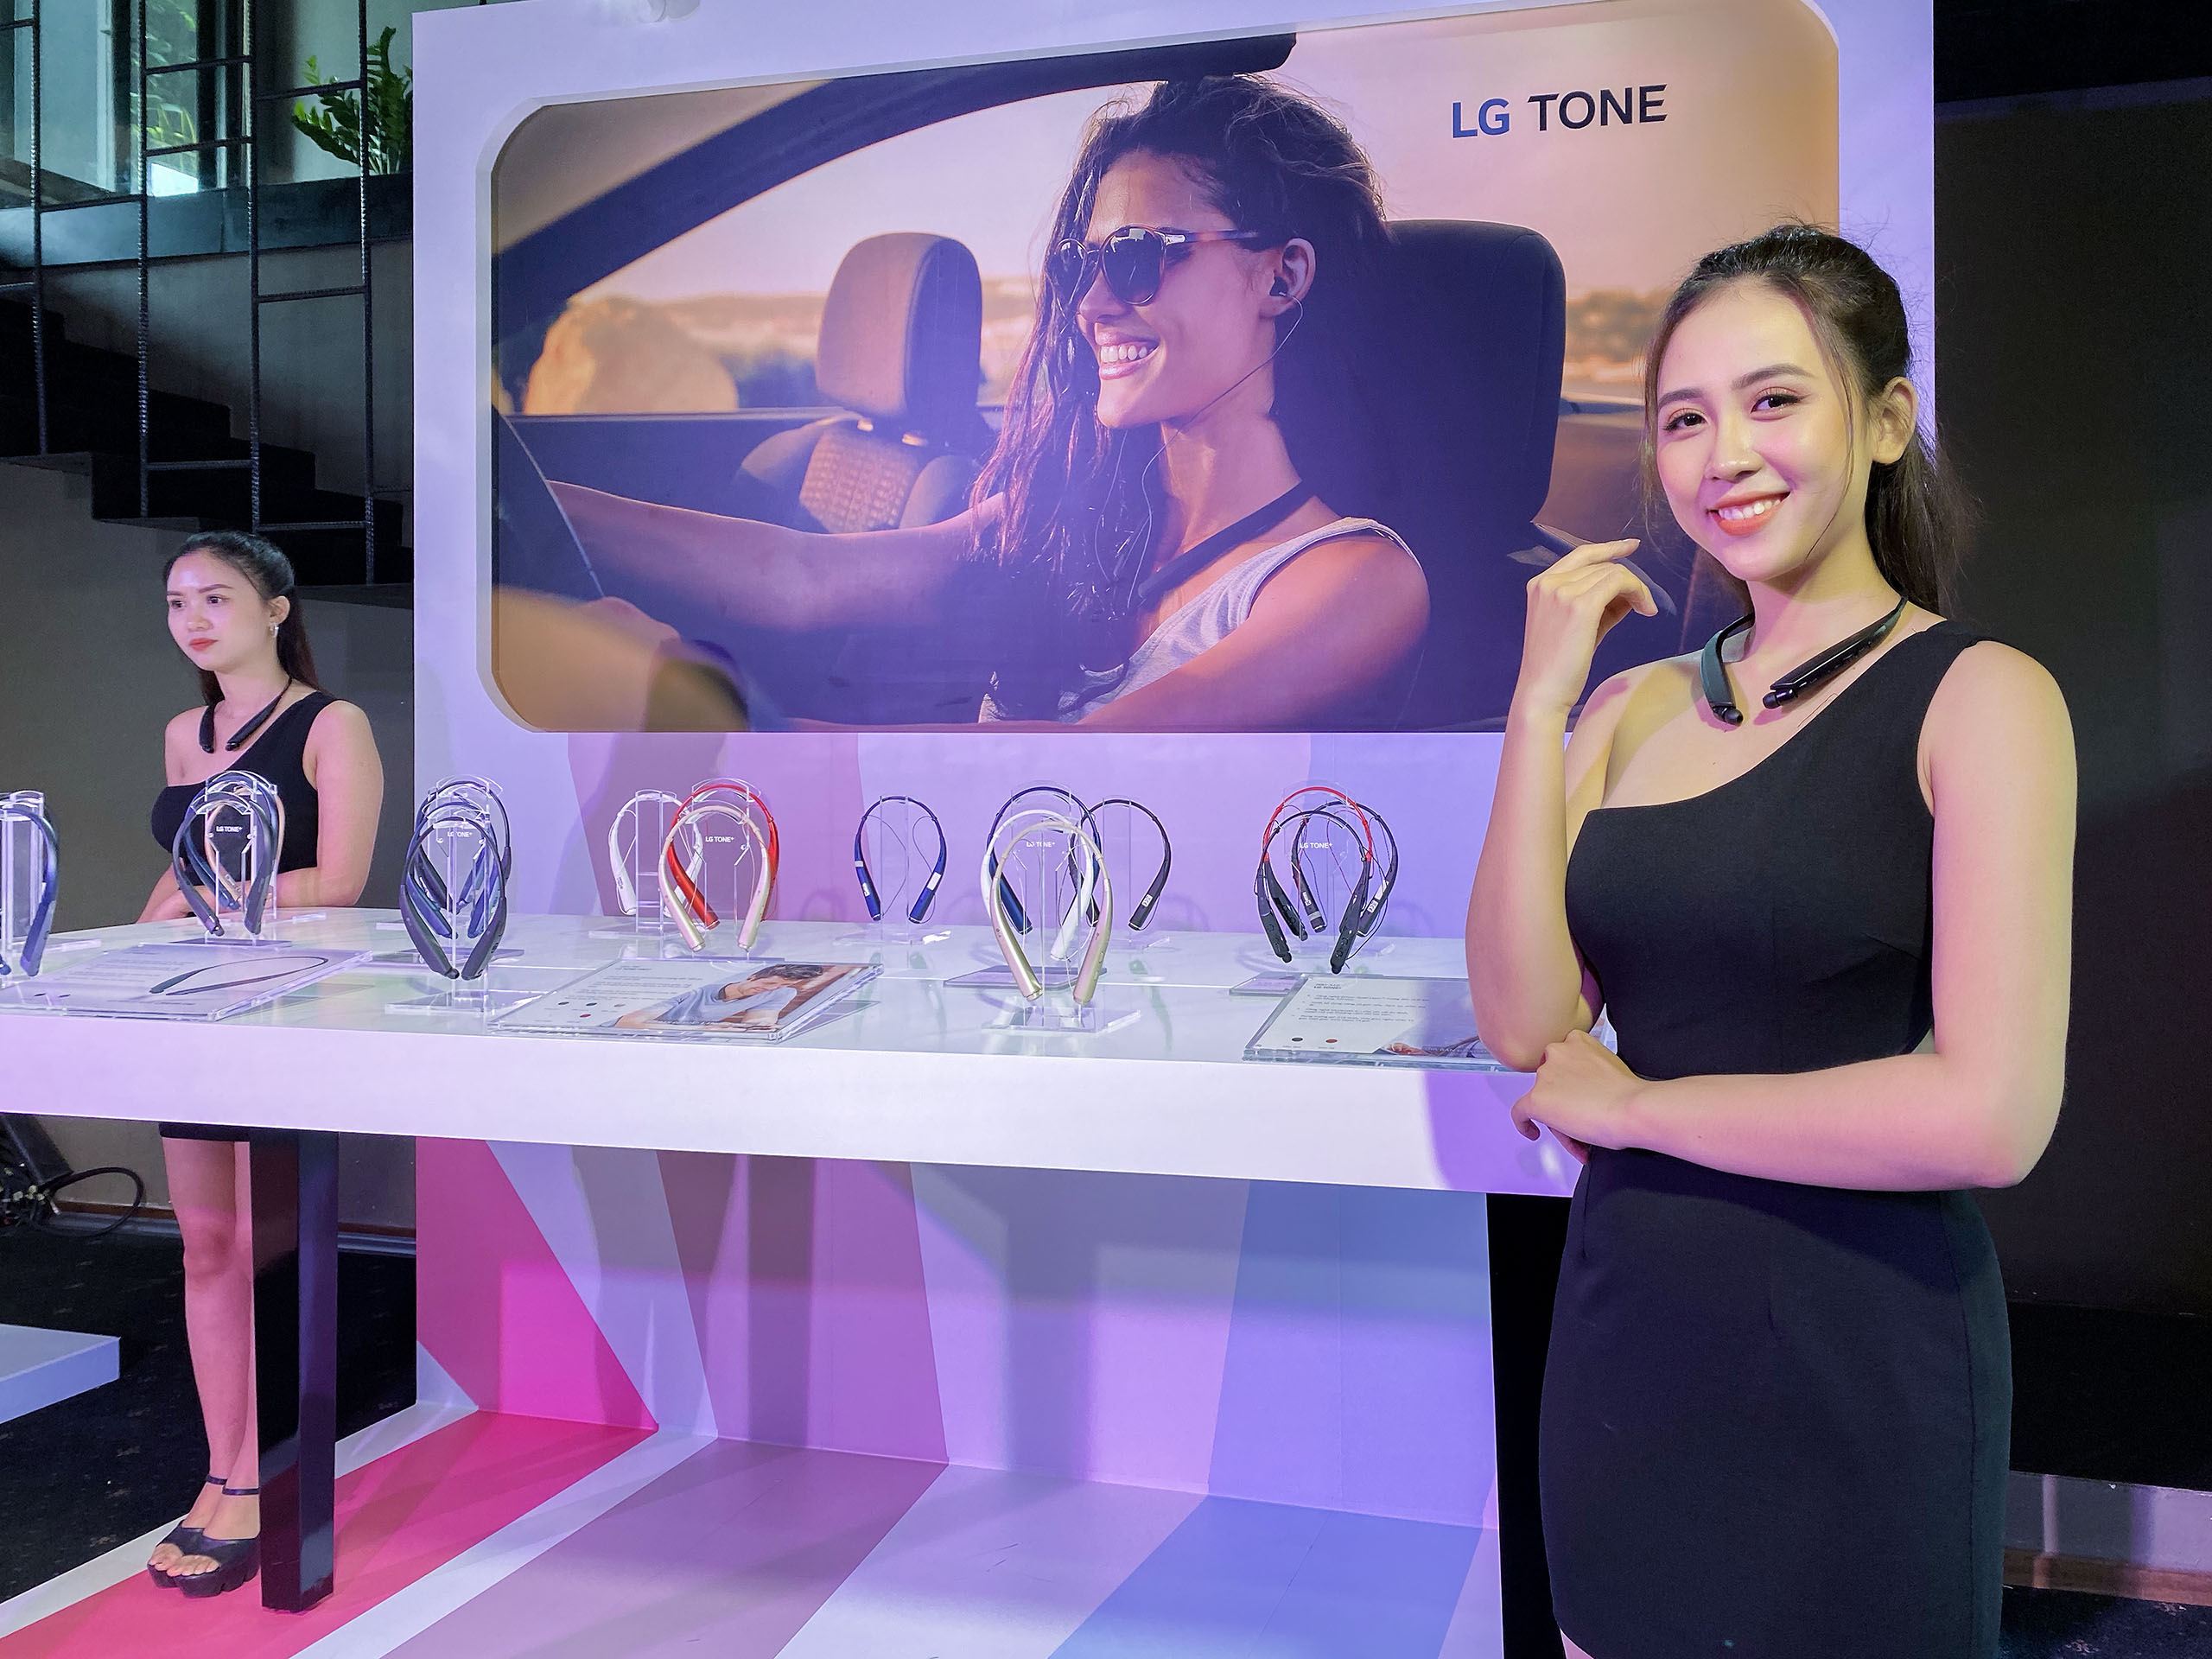 LG ra mắt dòng tai nghe không dây LG Tone tại Việt Nam: giá từ 899,000 VND